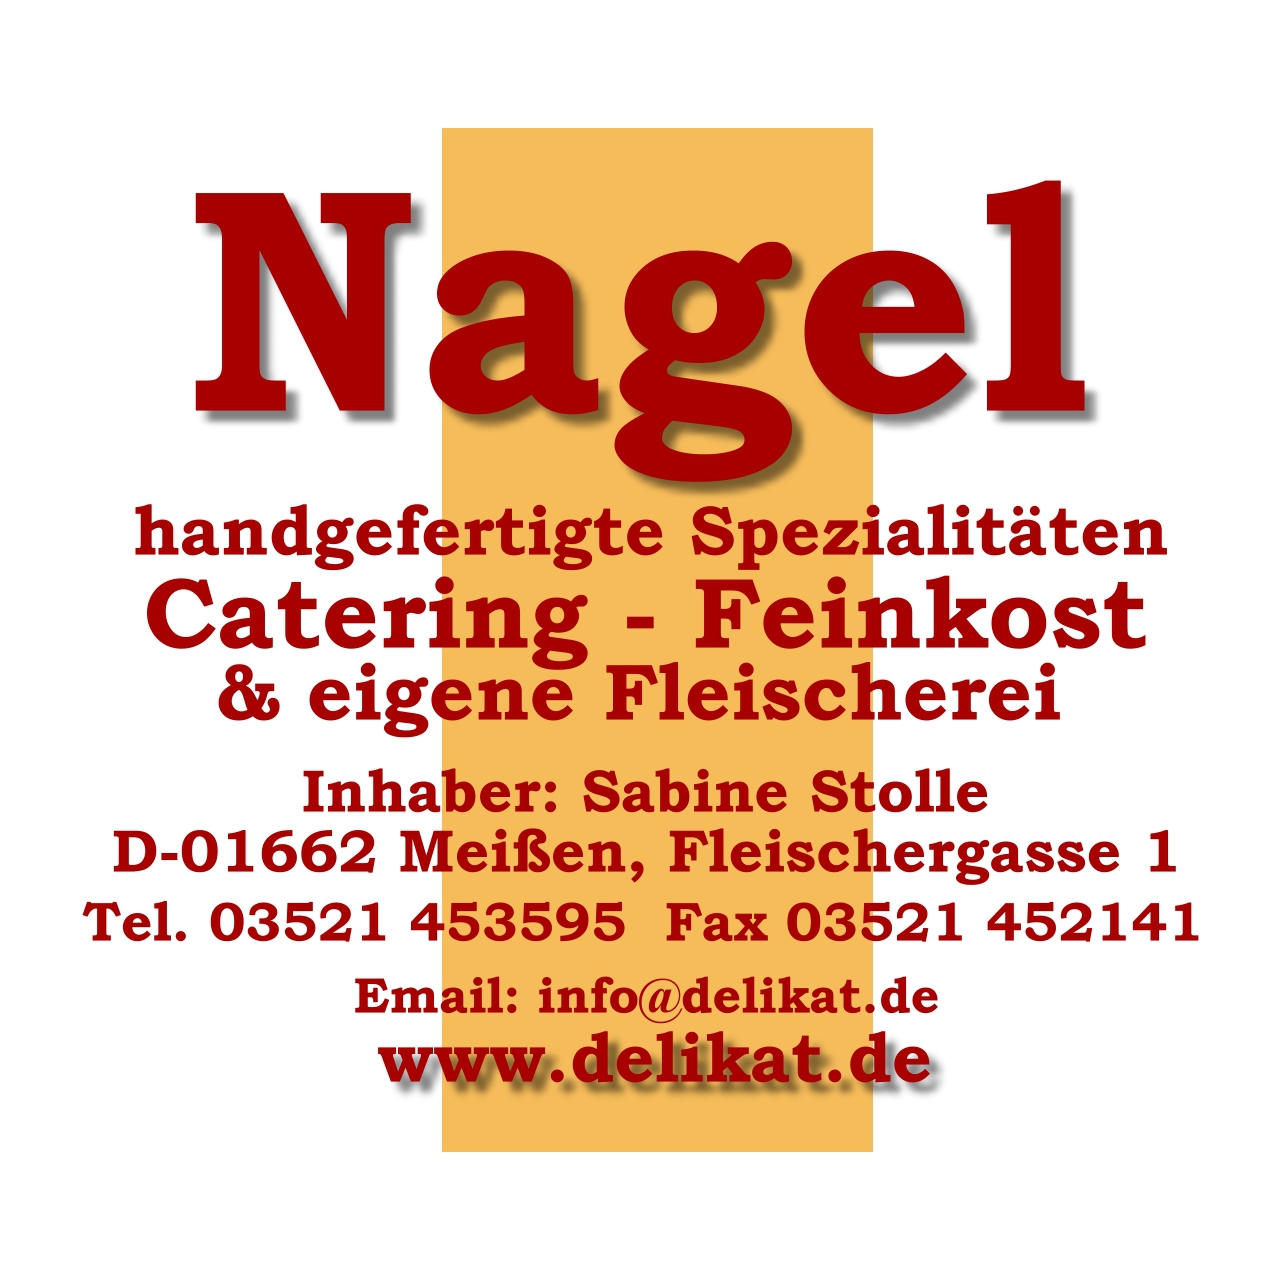 Fleischerei NAGEL in Meißen - Logo